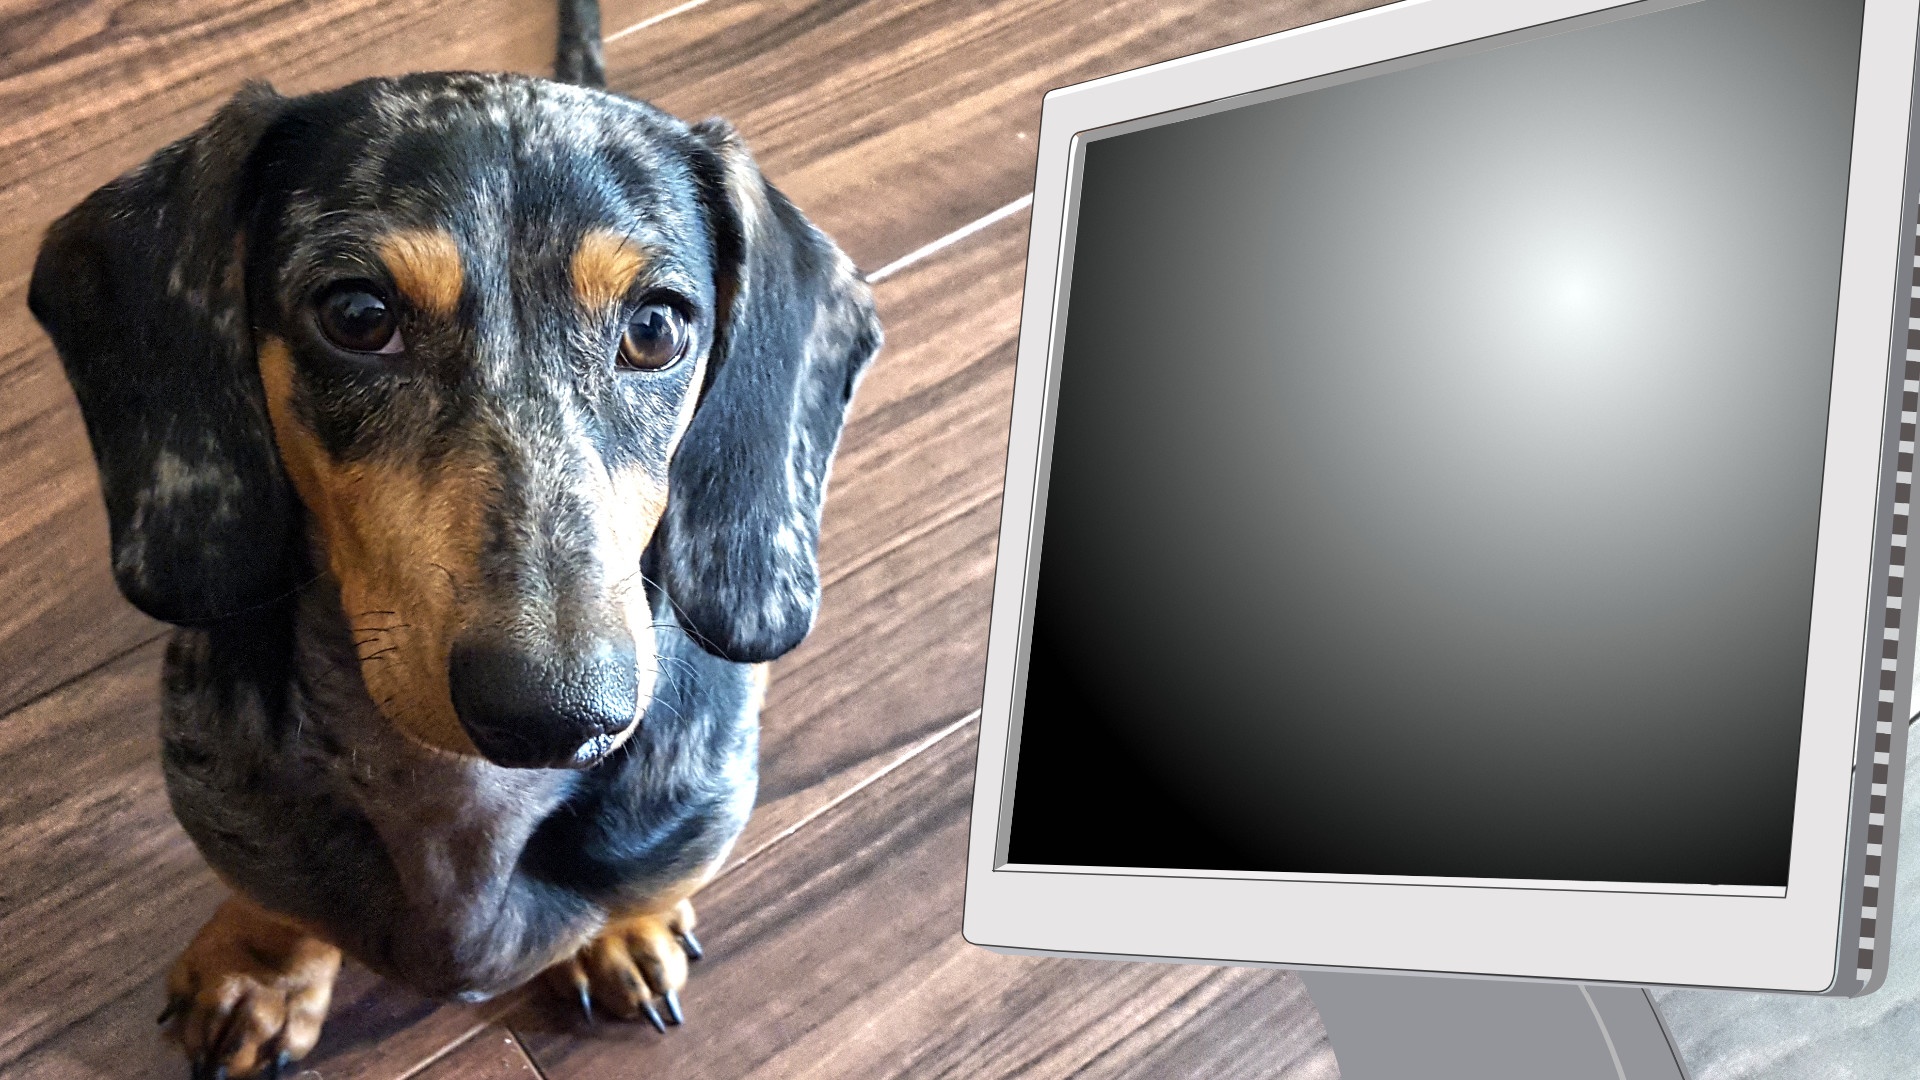 #Kein Scherz: Jetzt werden Videospiele für Hunde entwickelt – mit sabberfestem Display